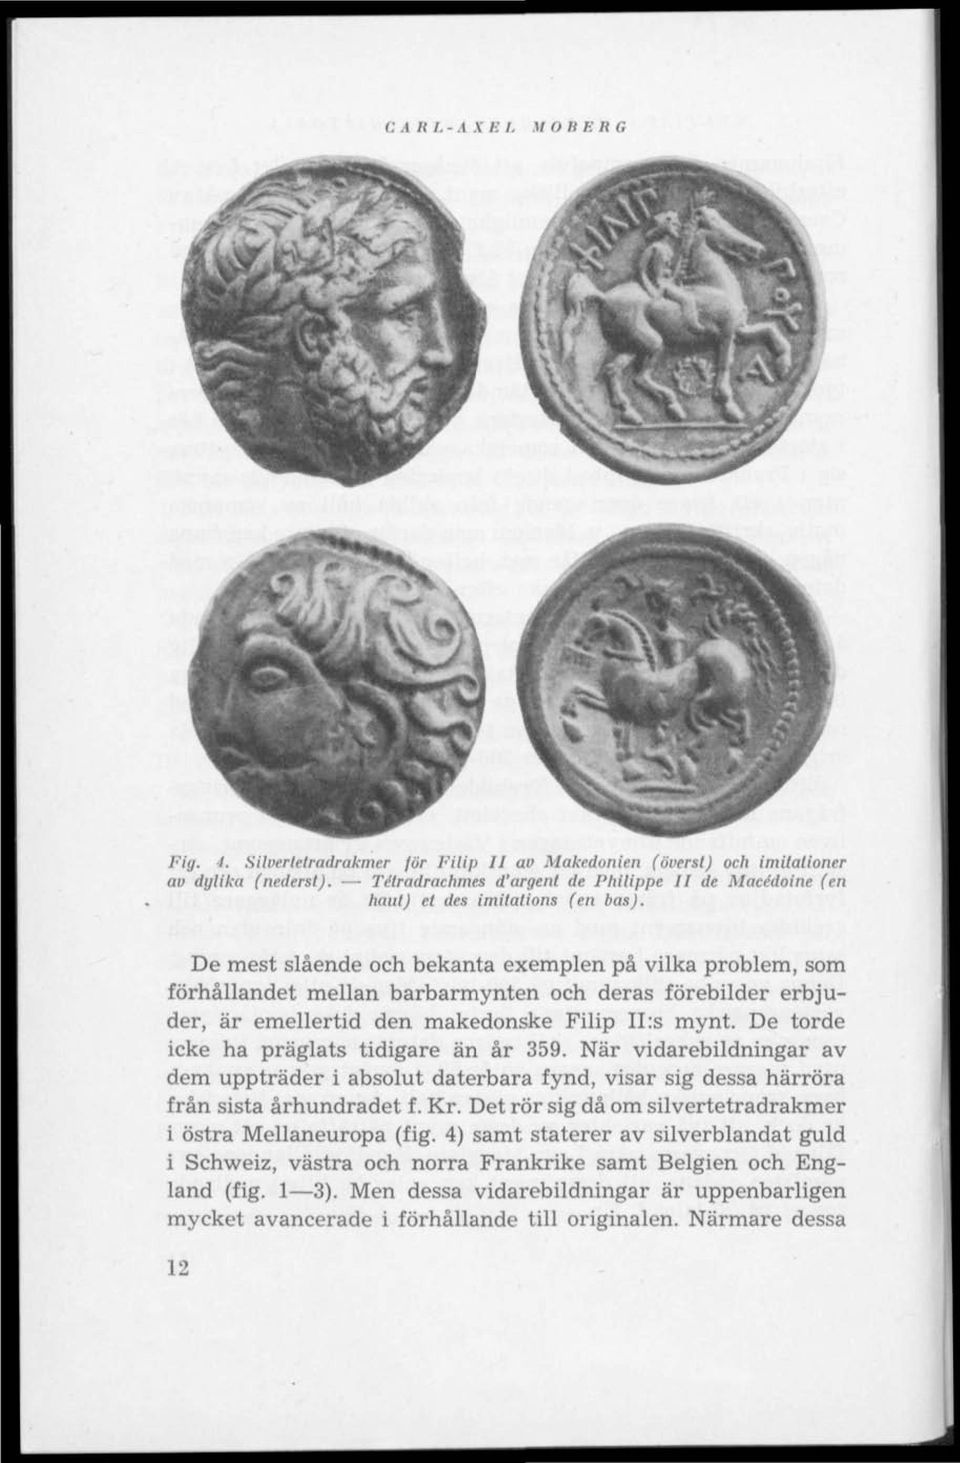 De mest slående och bekanta exemplen på vilka problem, som förhållandet mellan barbarmynten och deras förebilder erbjuder, är emellertid den makedonske Filip II :s mynt.